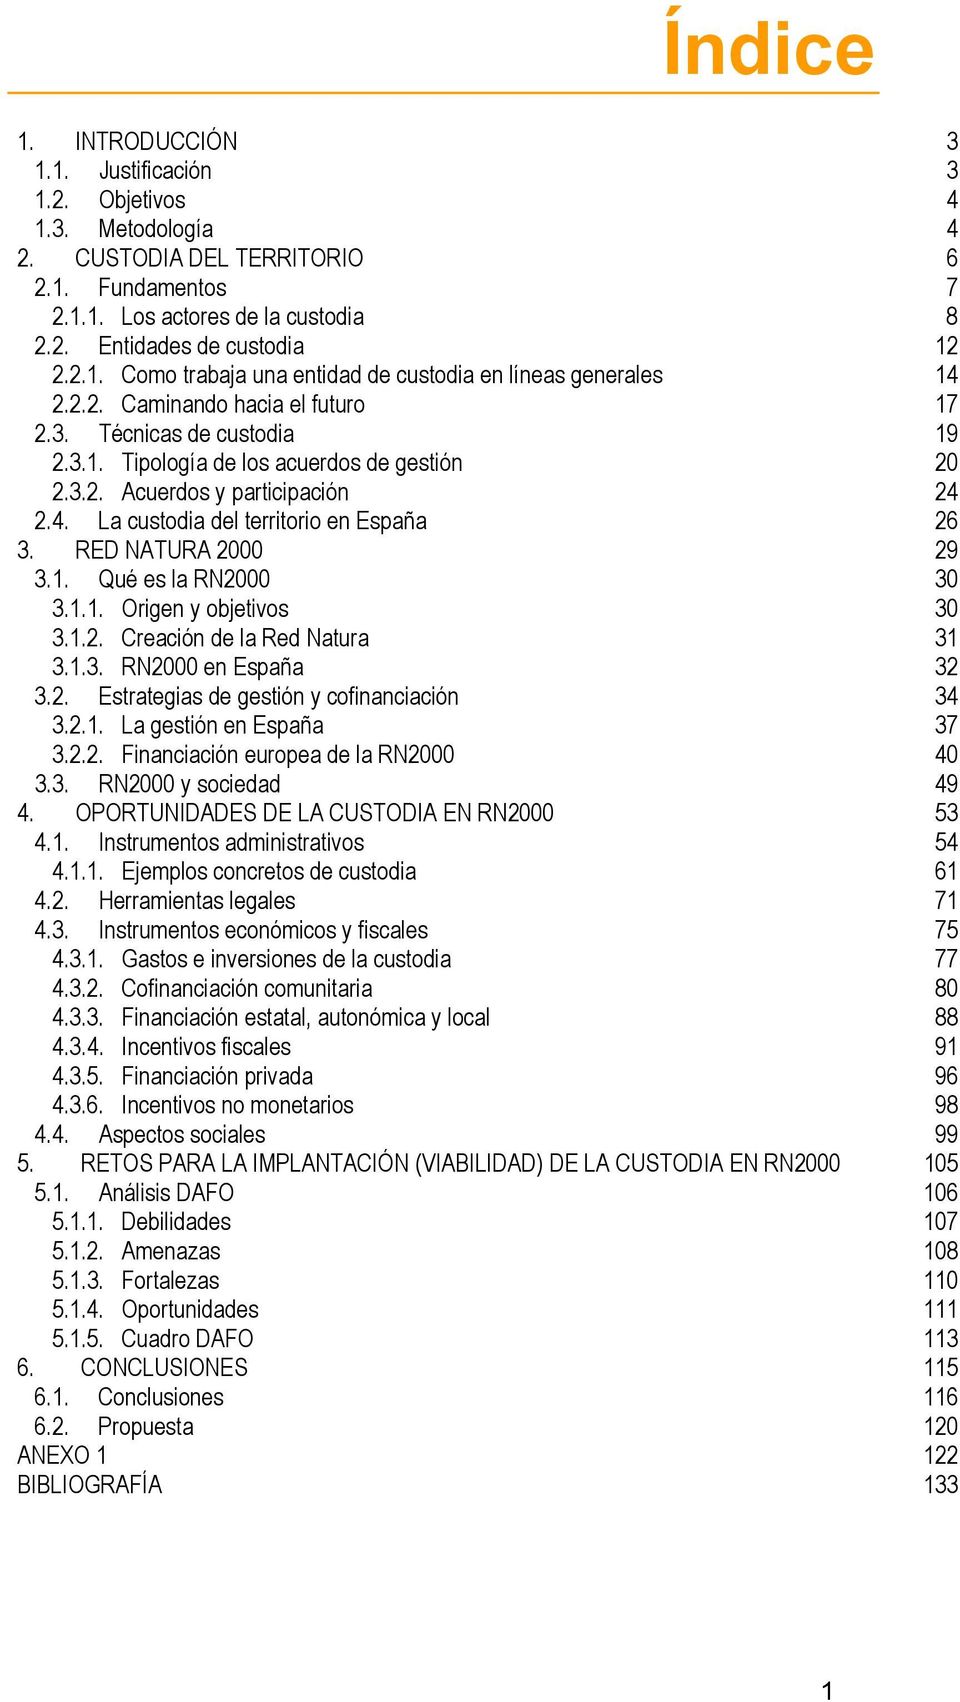 RED NATURA 2000 29 3.1. Qué es la RN2000 30 3.1.1. Origen y objetivos 30 3.1.2. Creación de la Red Natura 31 3.1.3. RN2000 en España 32 3.2. Estrategias de gestión y cofinanciación 34 3.2.1. La gestión en España 37 3.